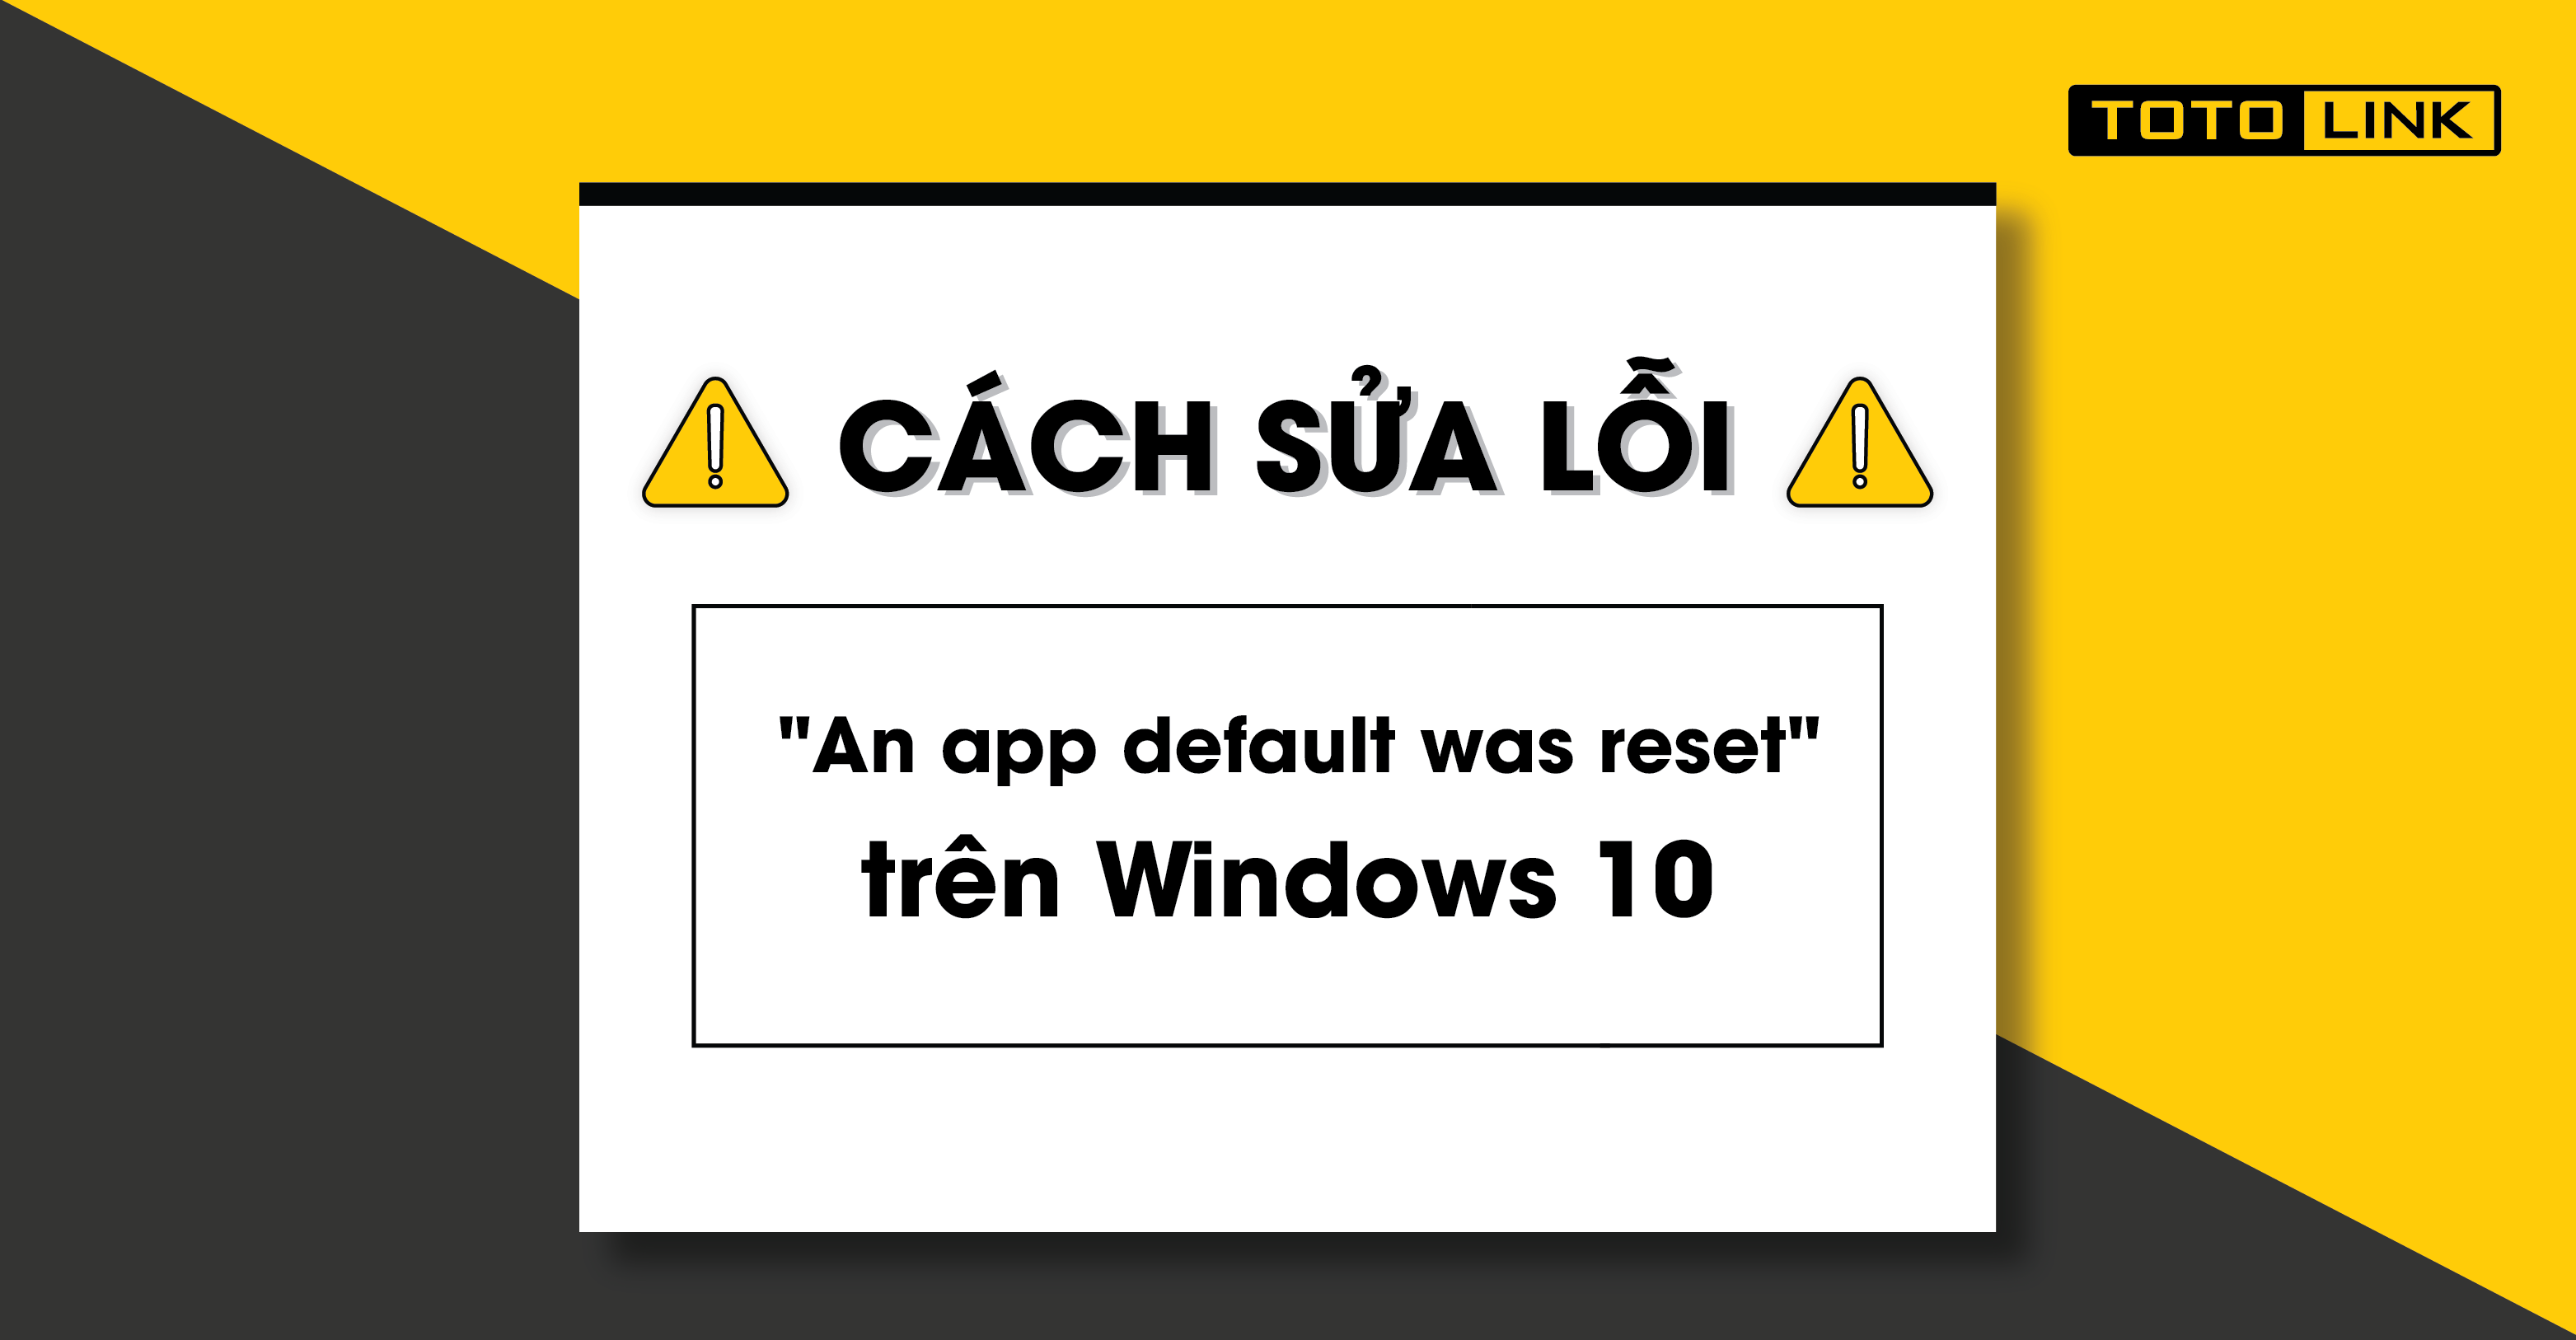 Cách sửa lỗi "An app default was reset" trên Windows 10 nhanh chóng